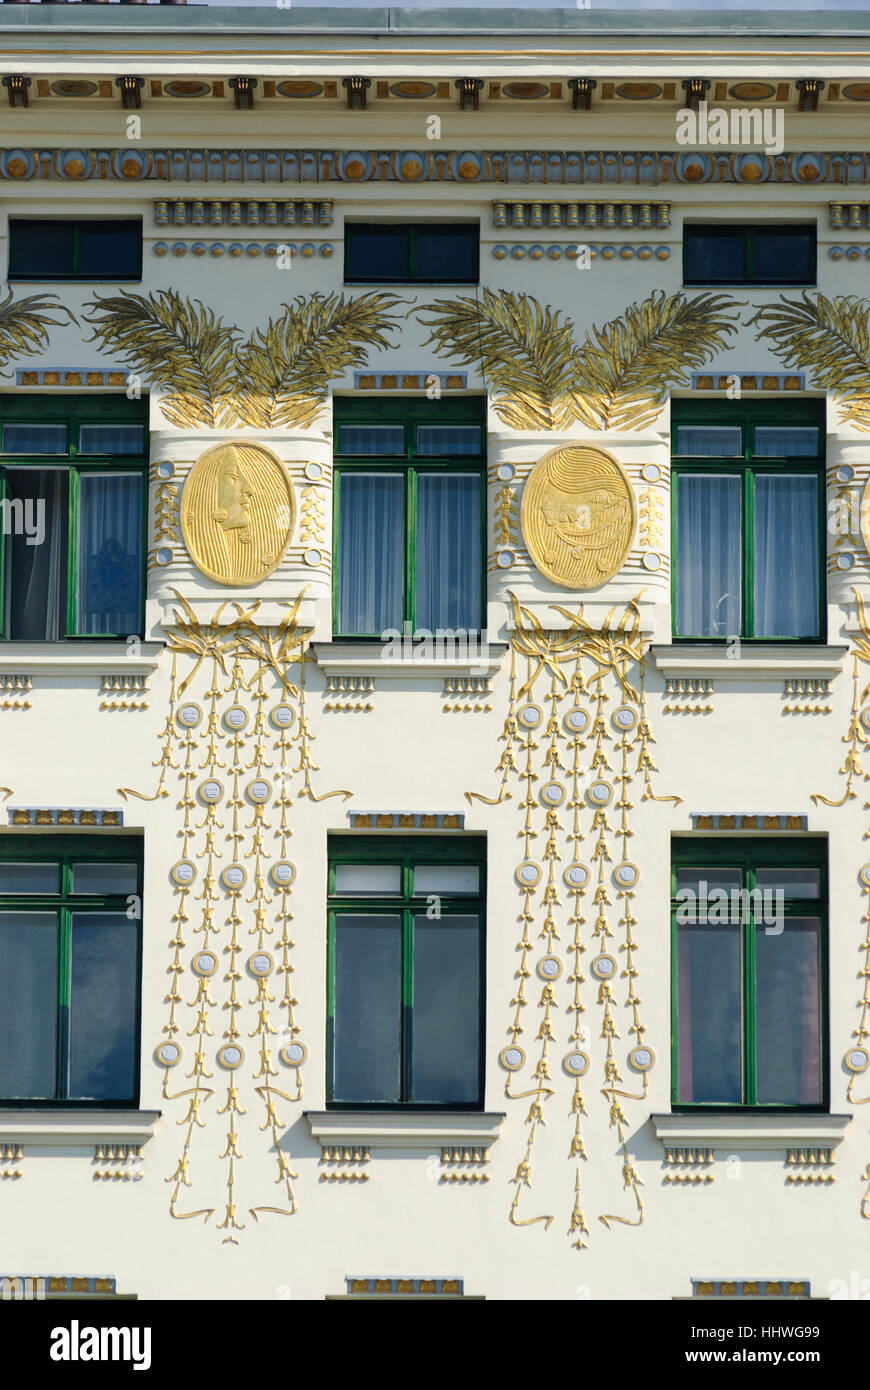 Wien, Wien: Haus Linke Wienzeile Nr. 38 vom Architekten Otto Wagner; Goldschmuck, 06., Wien, Österreich Stockfoto